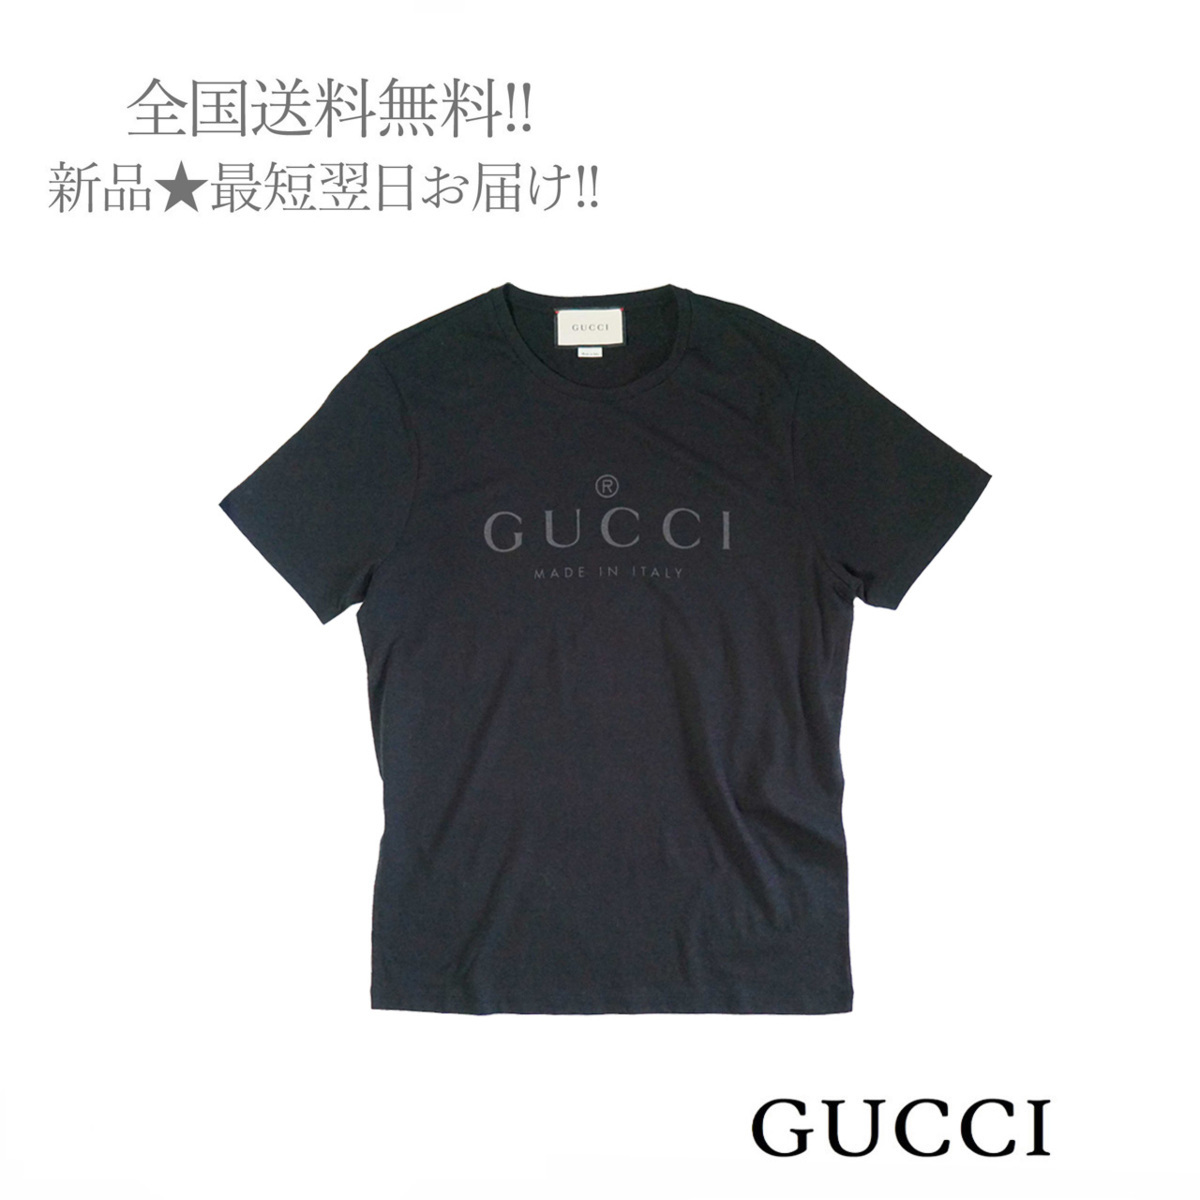 ヤフオク! -「GUCCI Tシャツ l」(グッチ)の中古品・新品・古着一覧